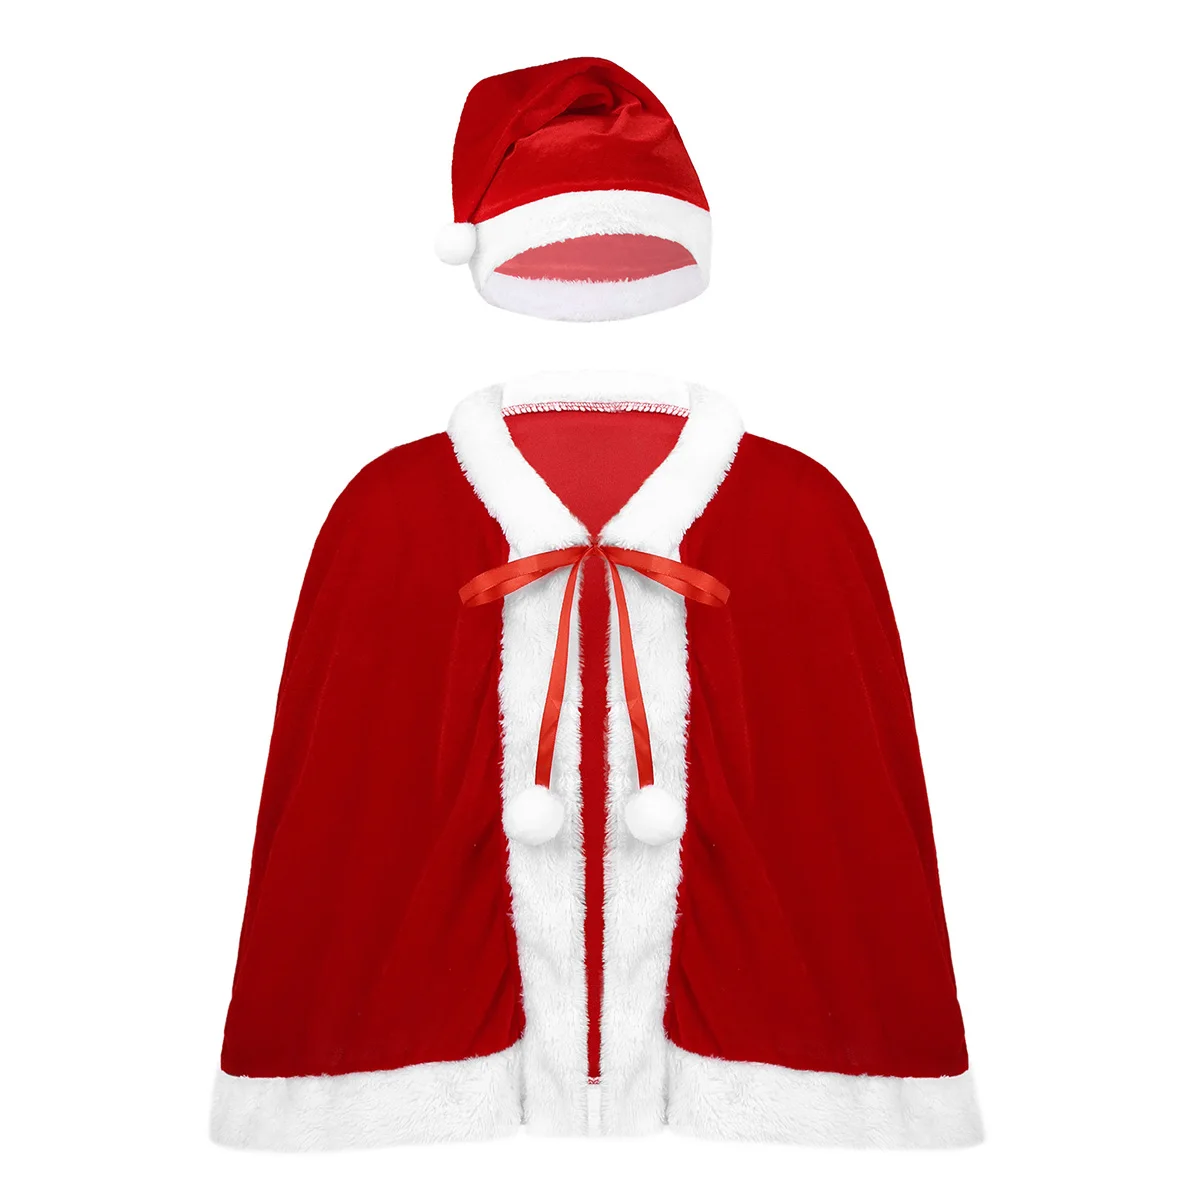 

Женский Рождественский халат Санта-Клауса, бархатный меховой воротник, красная накидка с капюшоном, Рождественская шапка, красный бархатны...